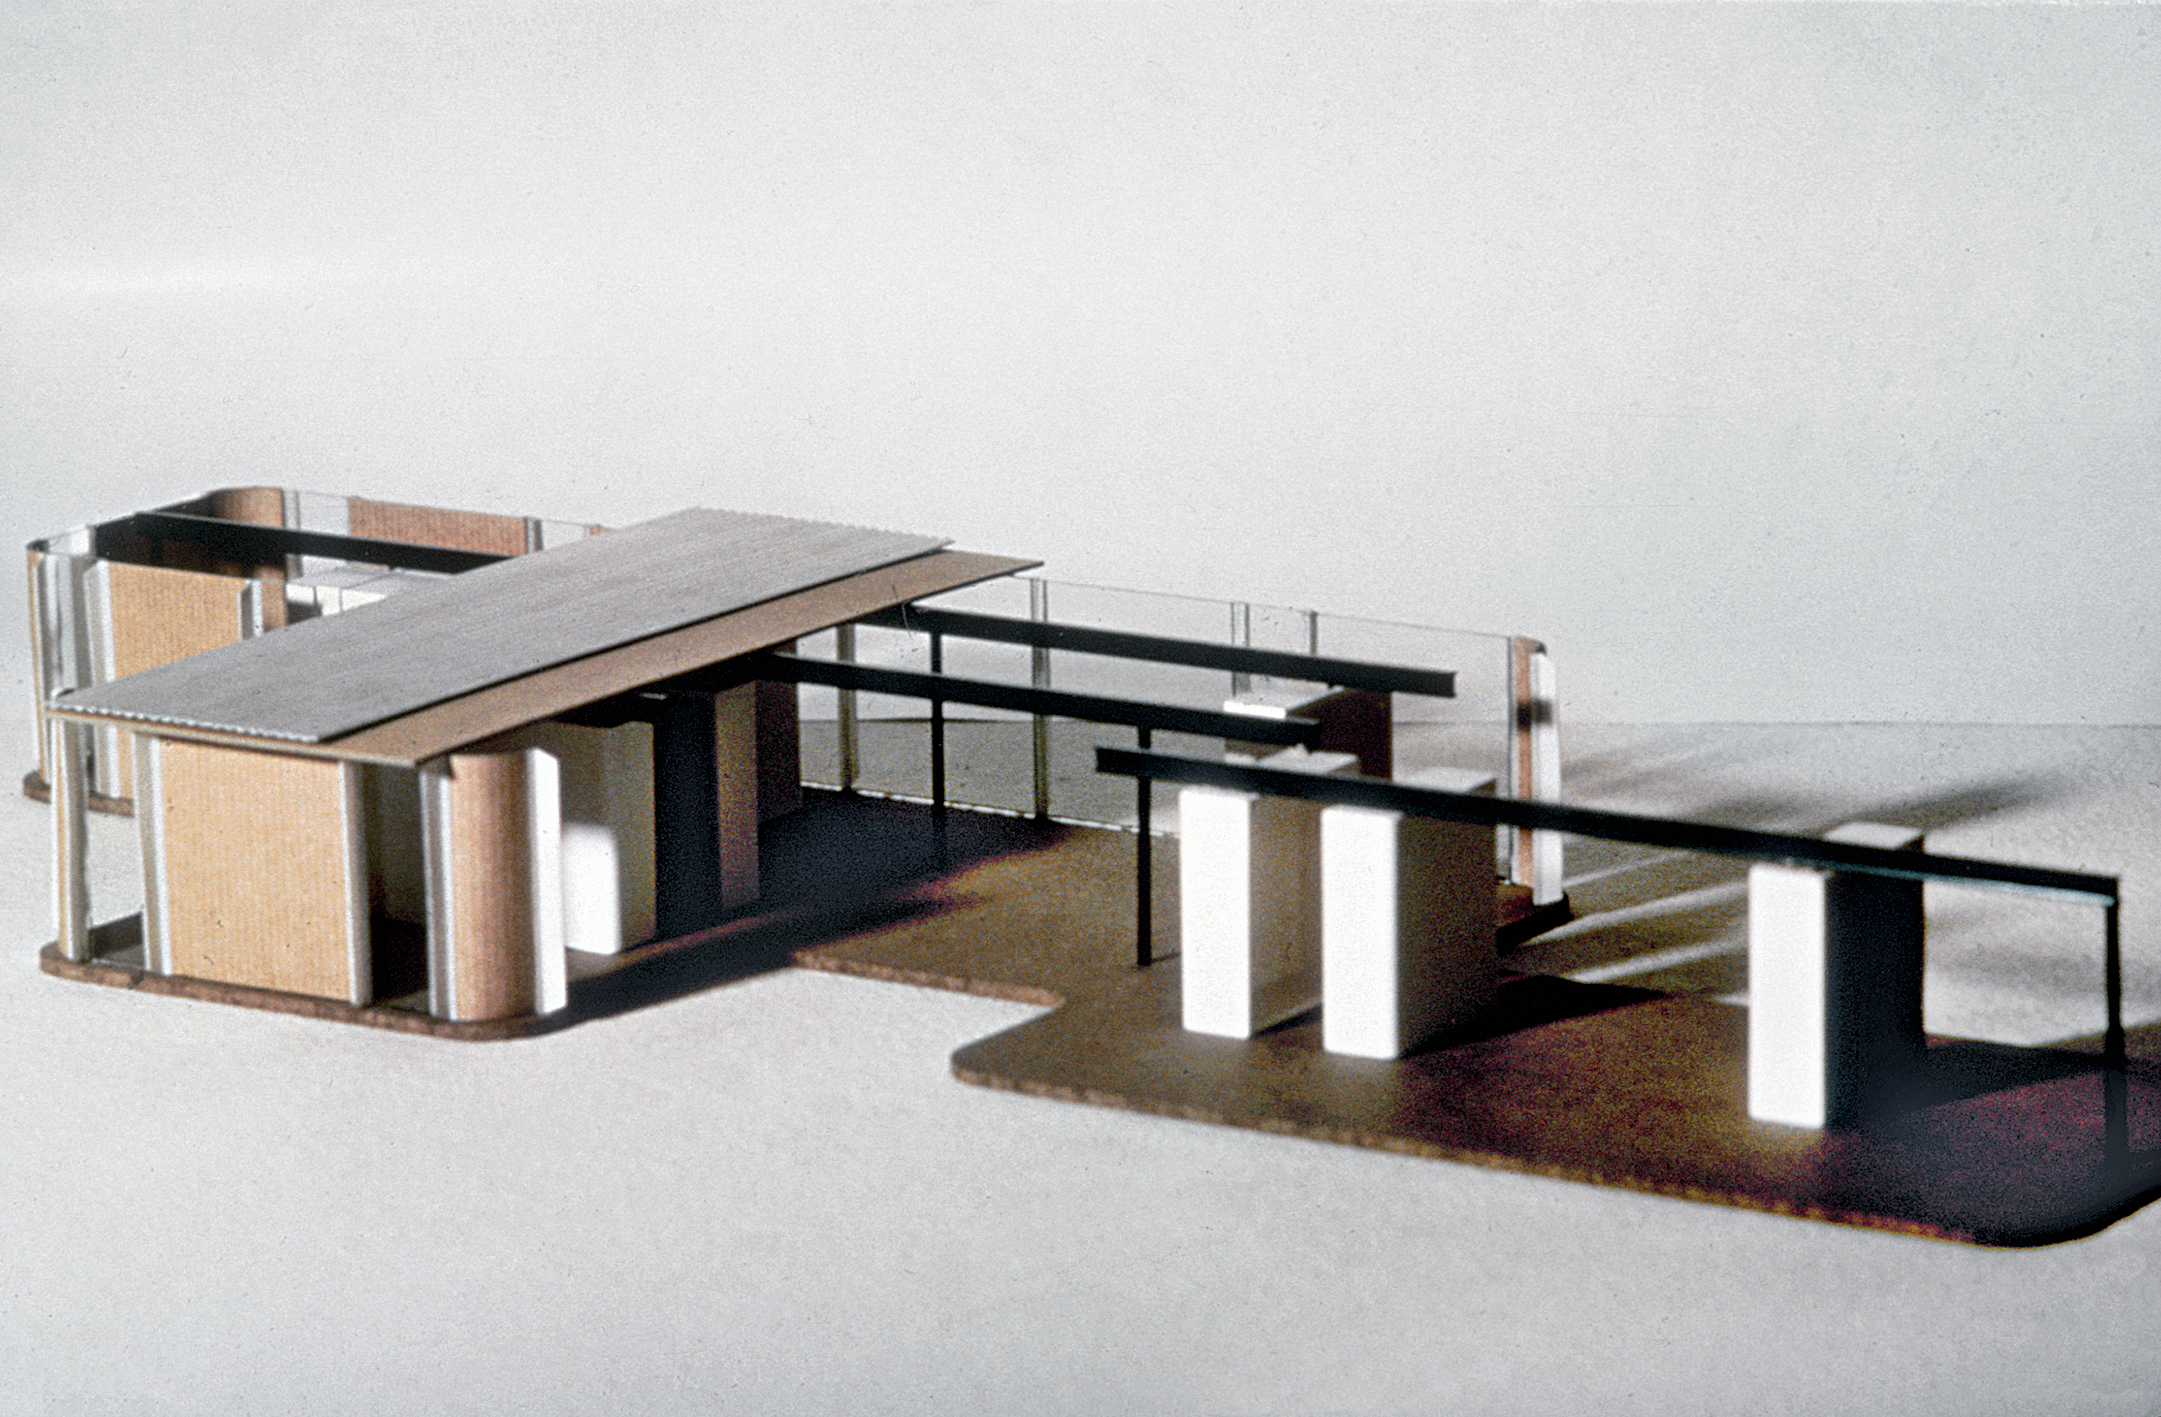 Villa Seynave, 1961 (Jean Prouvé, with architects N. Hutchison, J. Parente, M. Sauzet, J. Vilfour). Model presented at the exhibition “Jean Prouvé”, Musée des Arts Décoratifs, Paris, 1964.